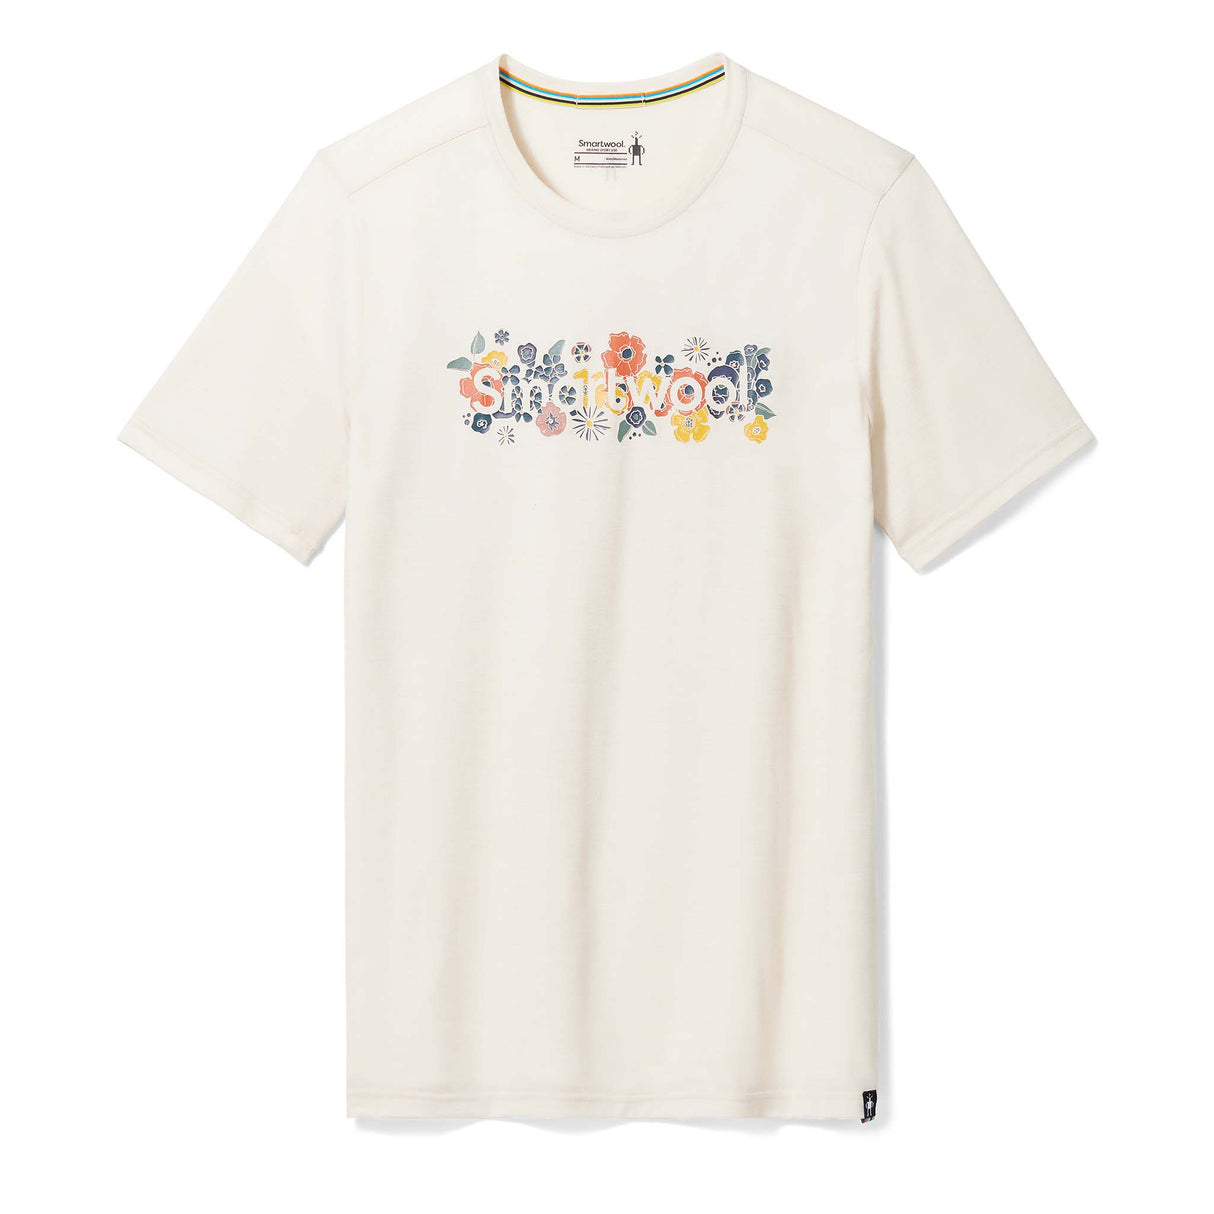 Smartwool t-shirt imprimé à manches courtes unisexe - amande chiné